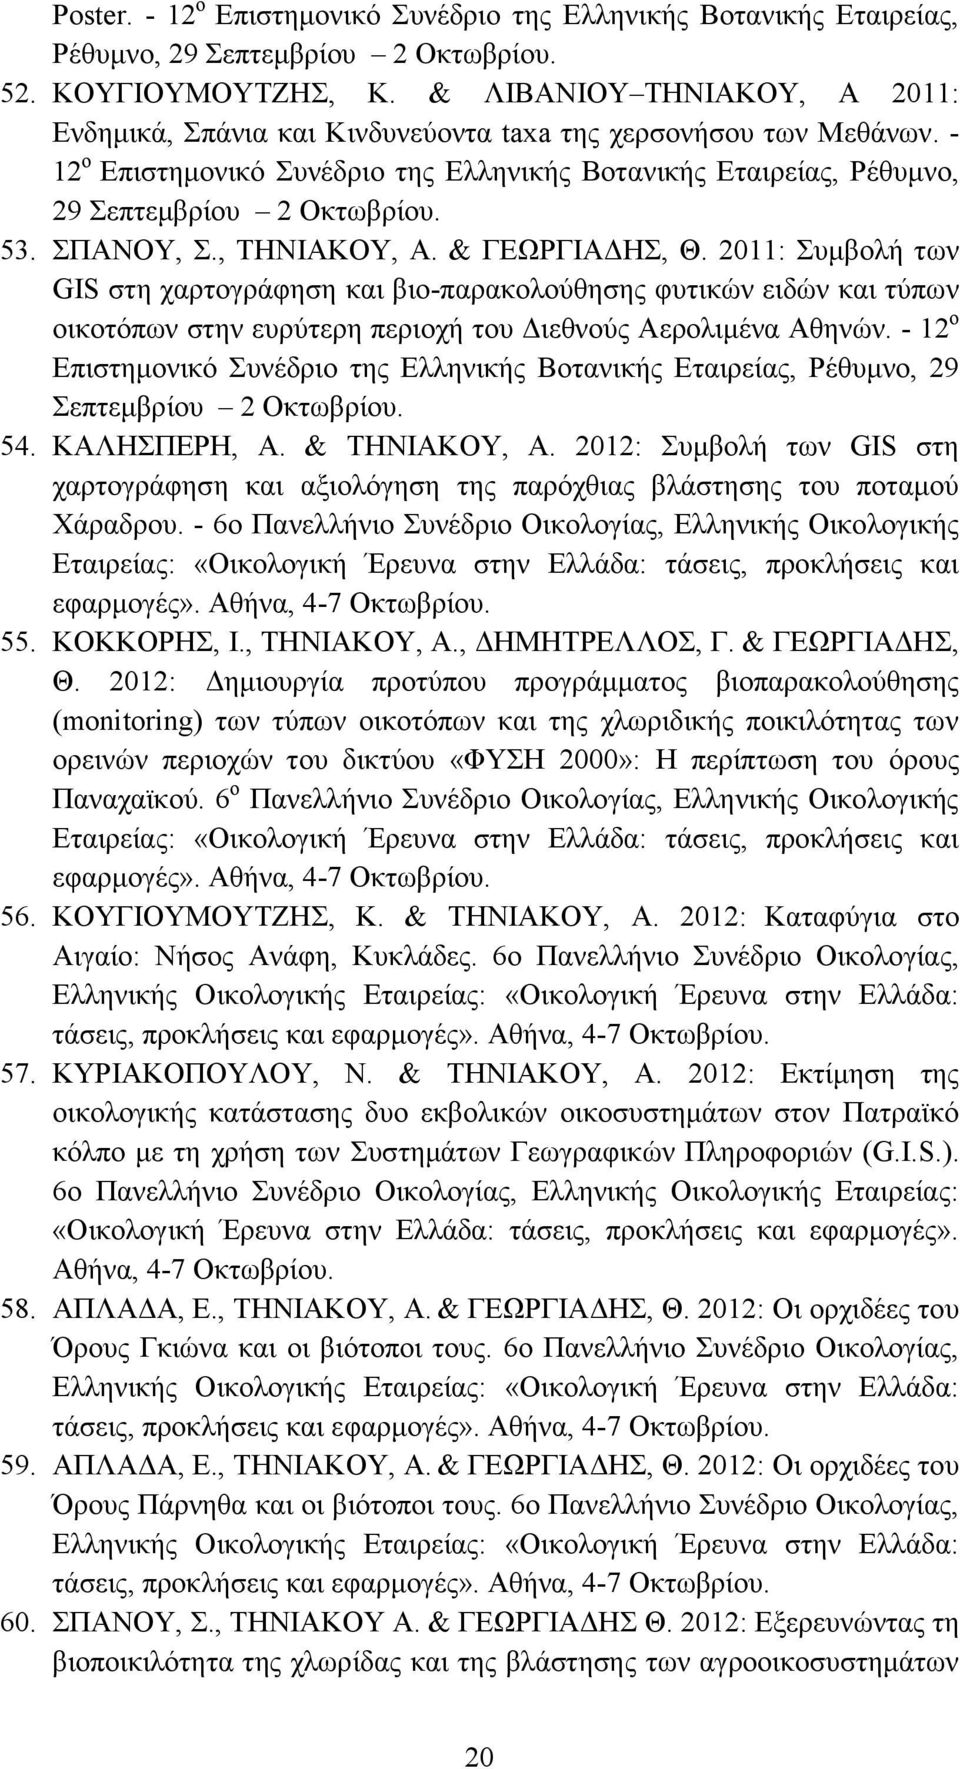 ΣΠΑΝΟΥ, Σ., ΤΗΝΙΑΚΟΥ, Α. & ΓΕΩΡΓΙΑΔΗΣ, Θ. 2011: Συμβολή των GIS στη χαρτογράφηση και βιο-παρακολούθησης φυτικών ειδών και τύπων οικοτόπων στην ευρύτερη περιοχή του Διεθνούς Αερολιμένα Αθηνών.